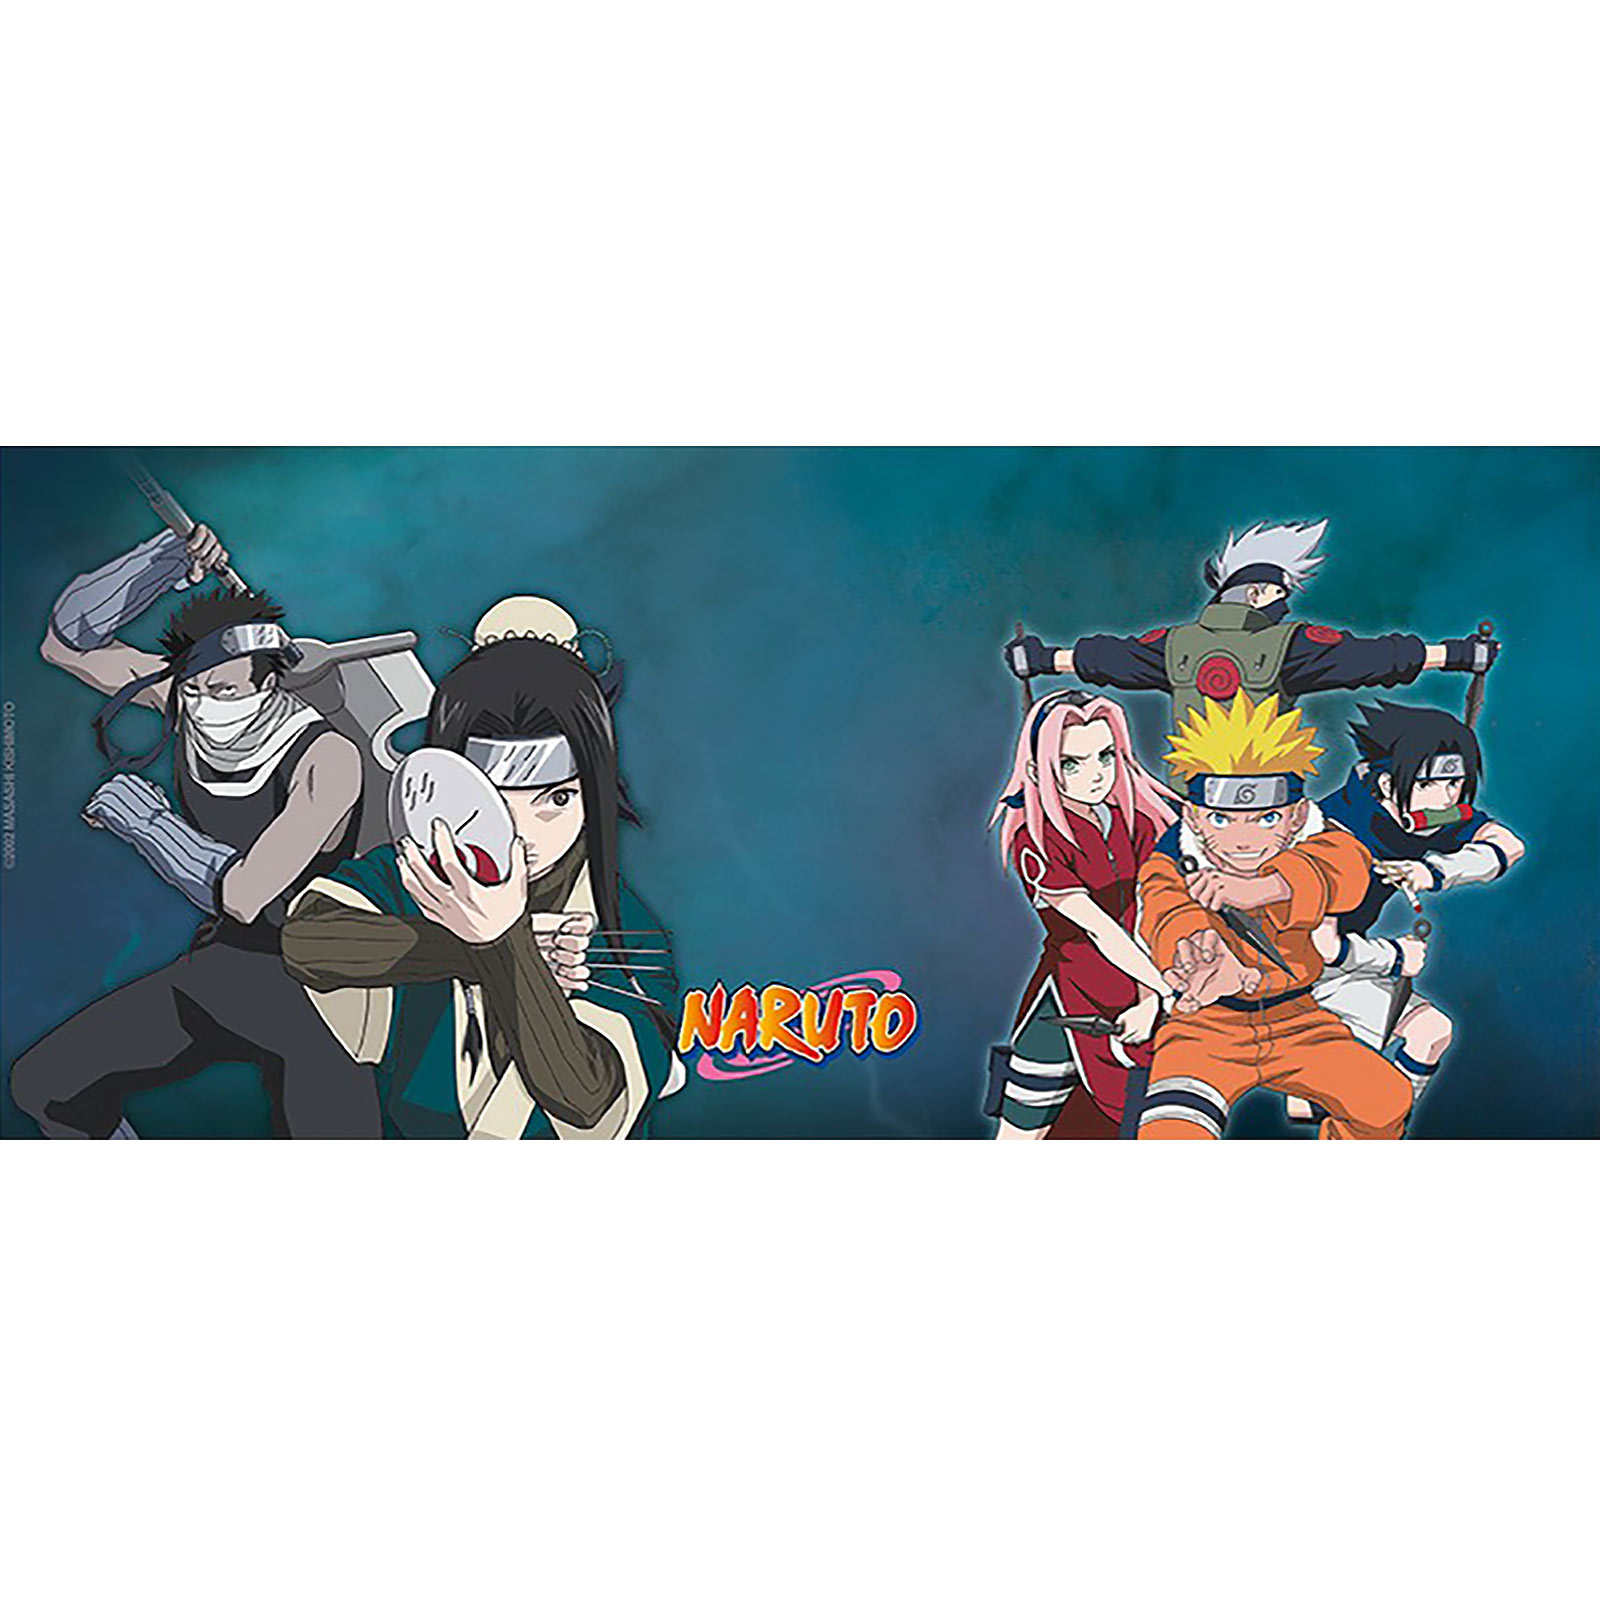 Naruto - Team 7 vs. Haku/Zabuza Mok